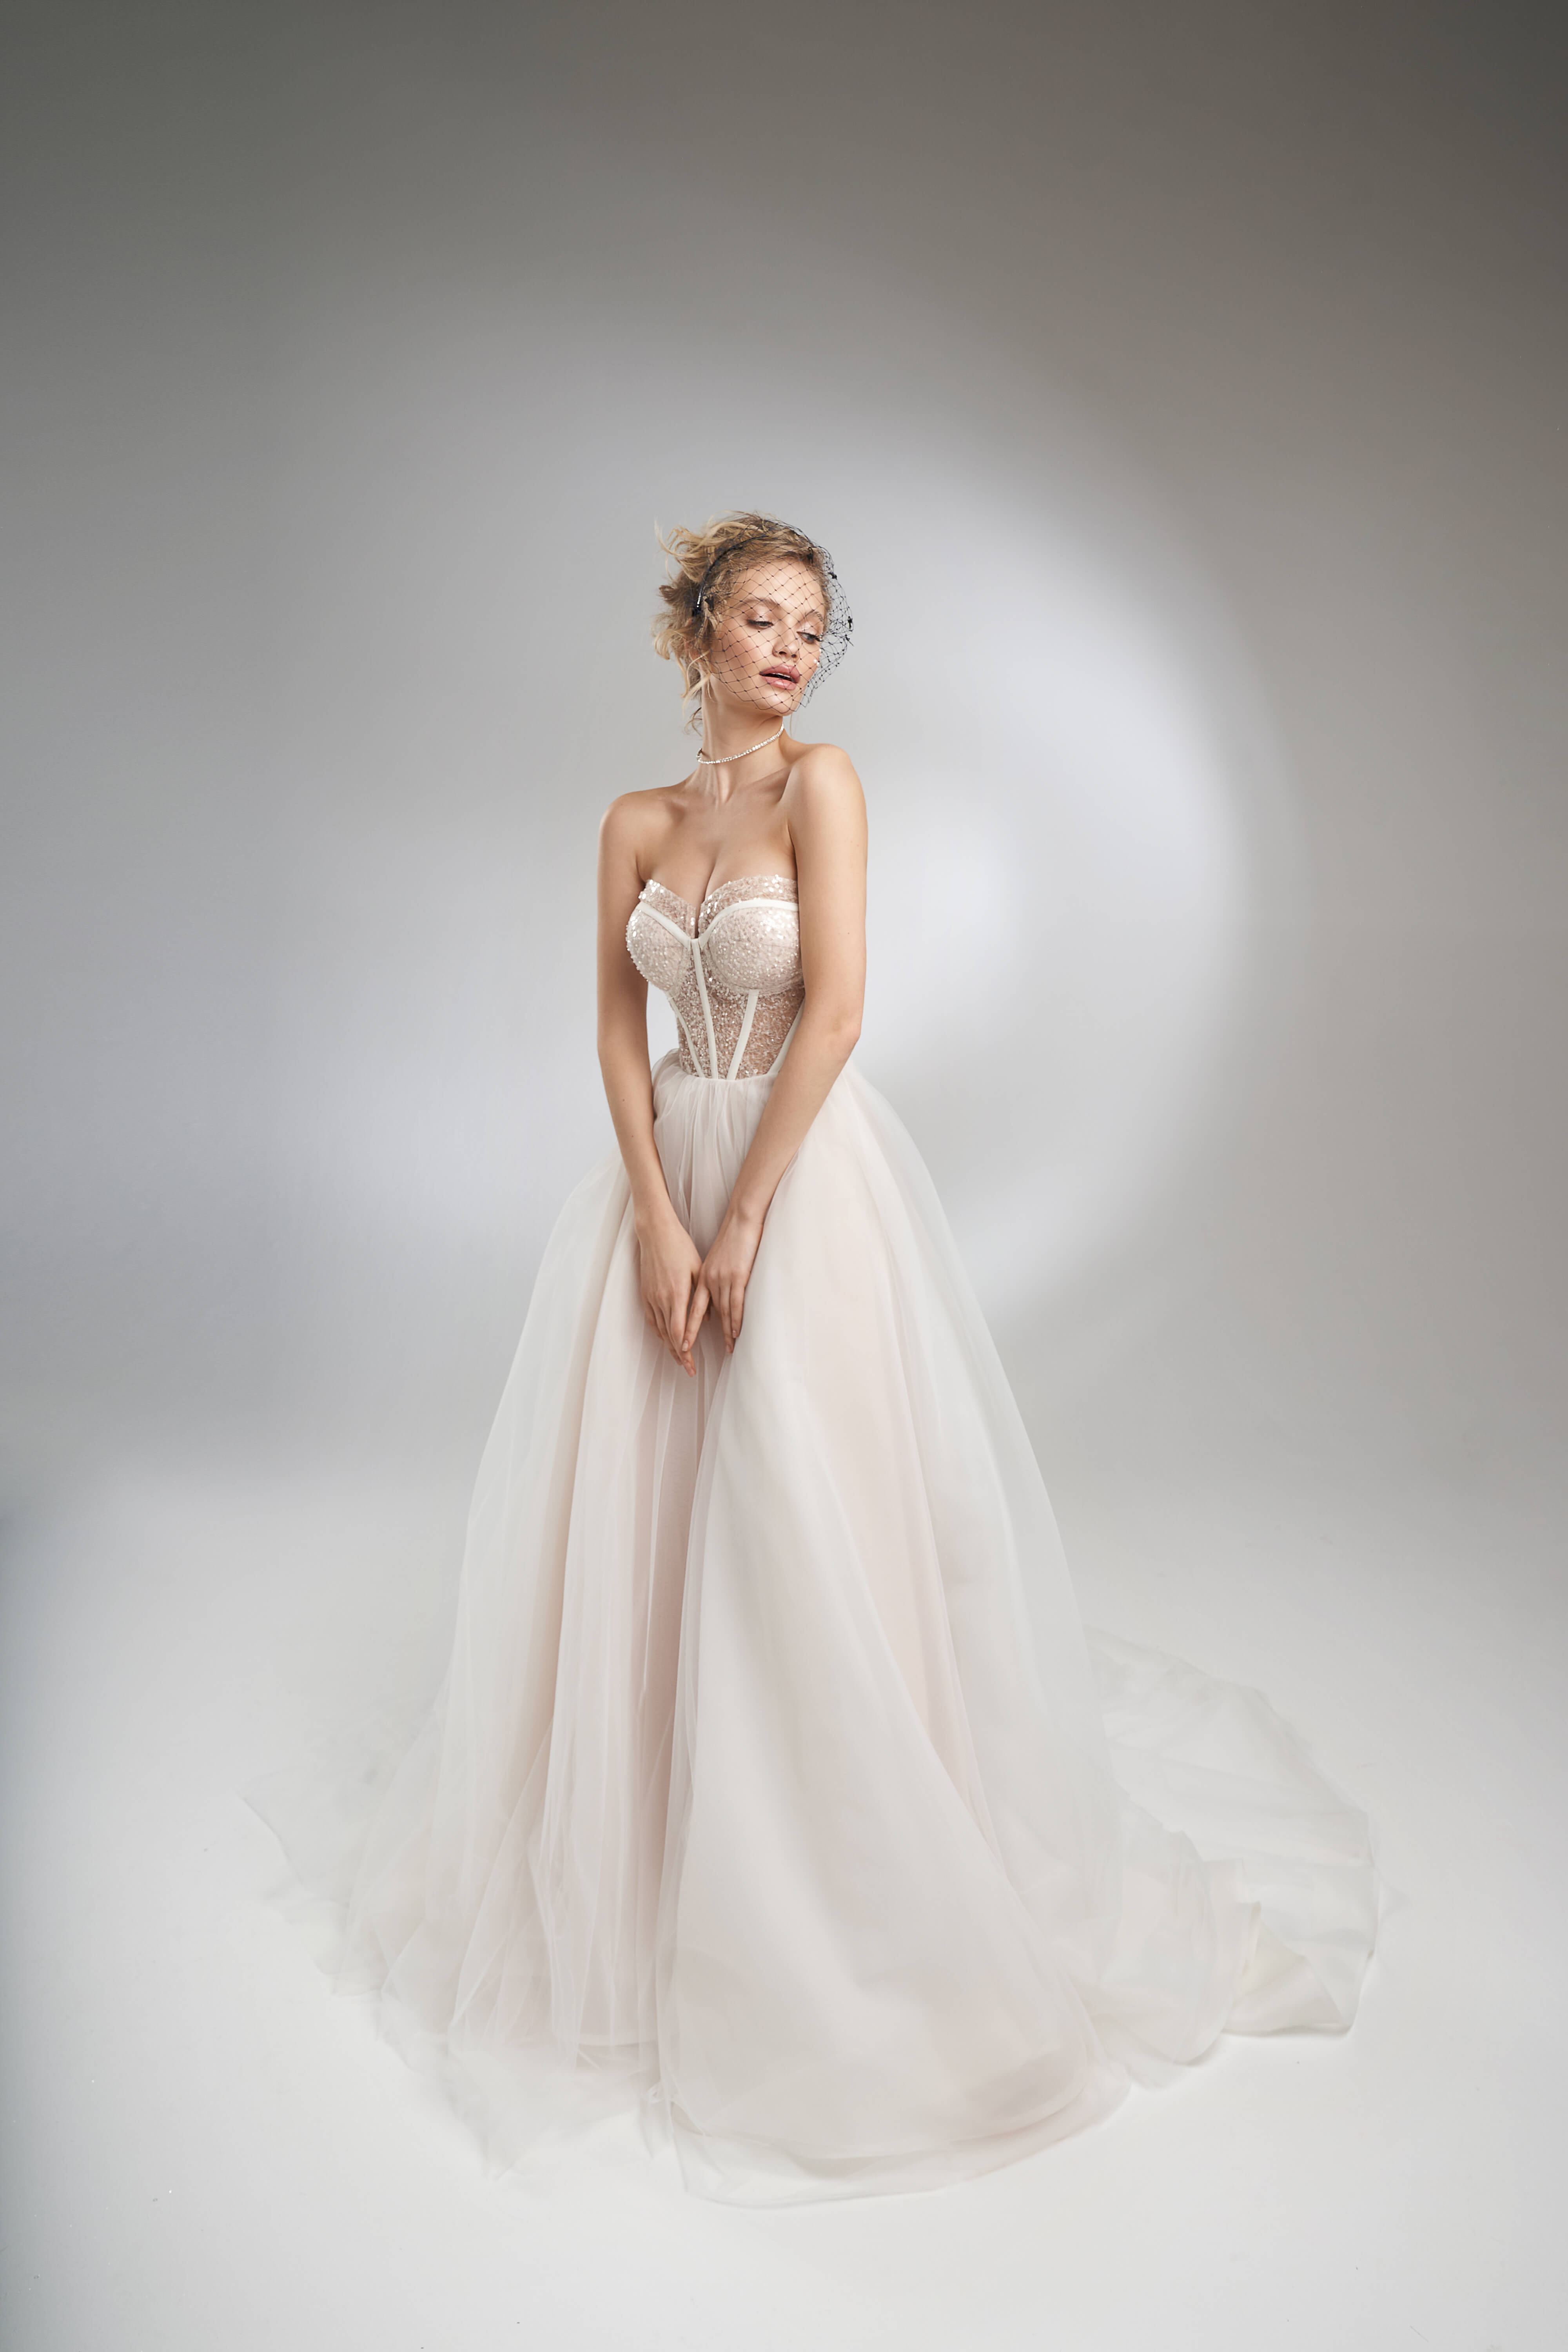 Купить свадебное платье «Ксавье» Рара Авис из коллекции Пьюр 2022 года в салоне «Мэри Трюфель»